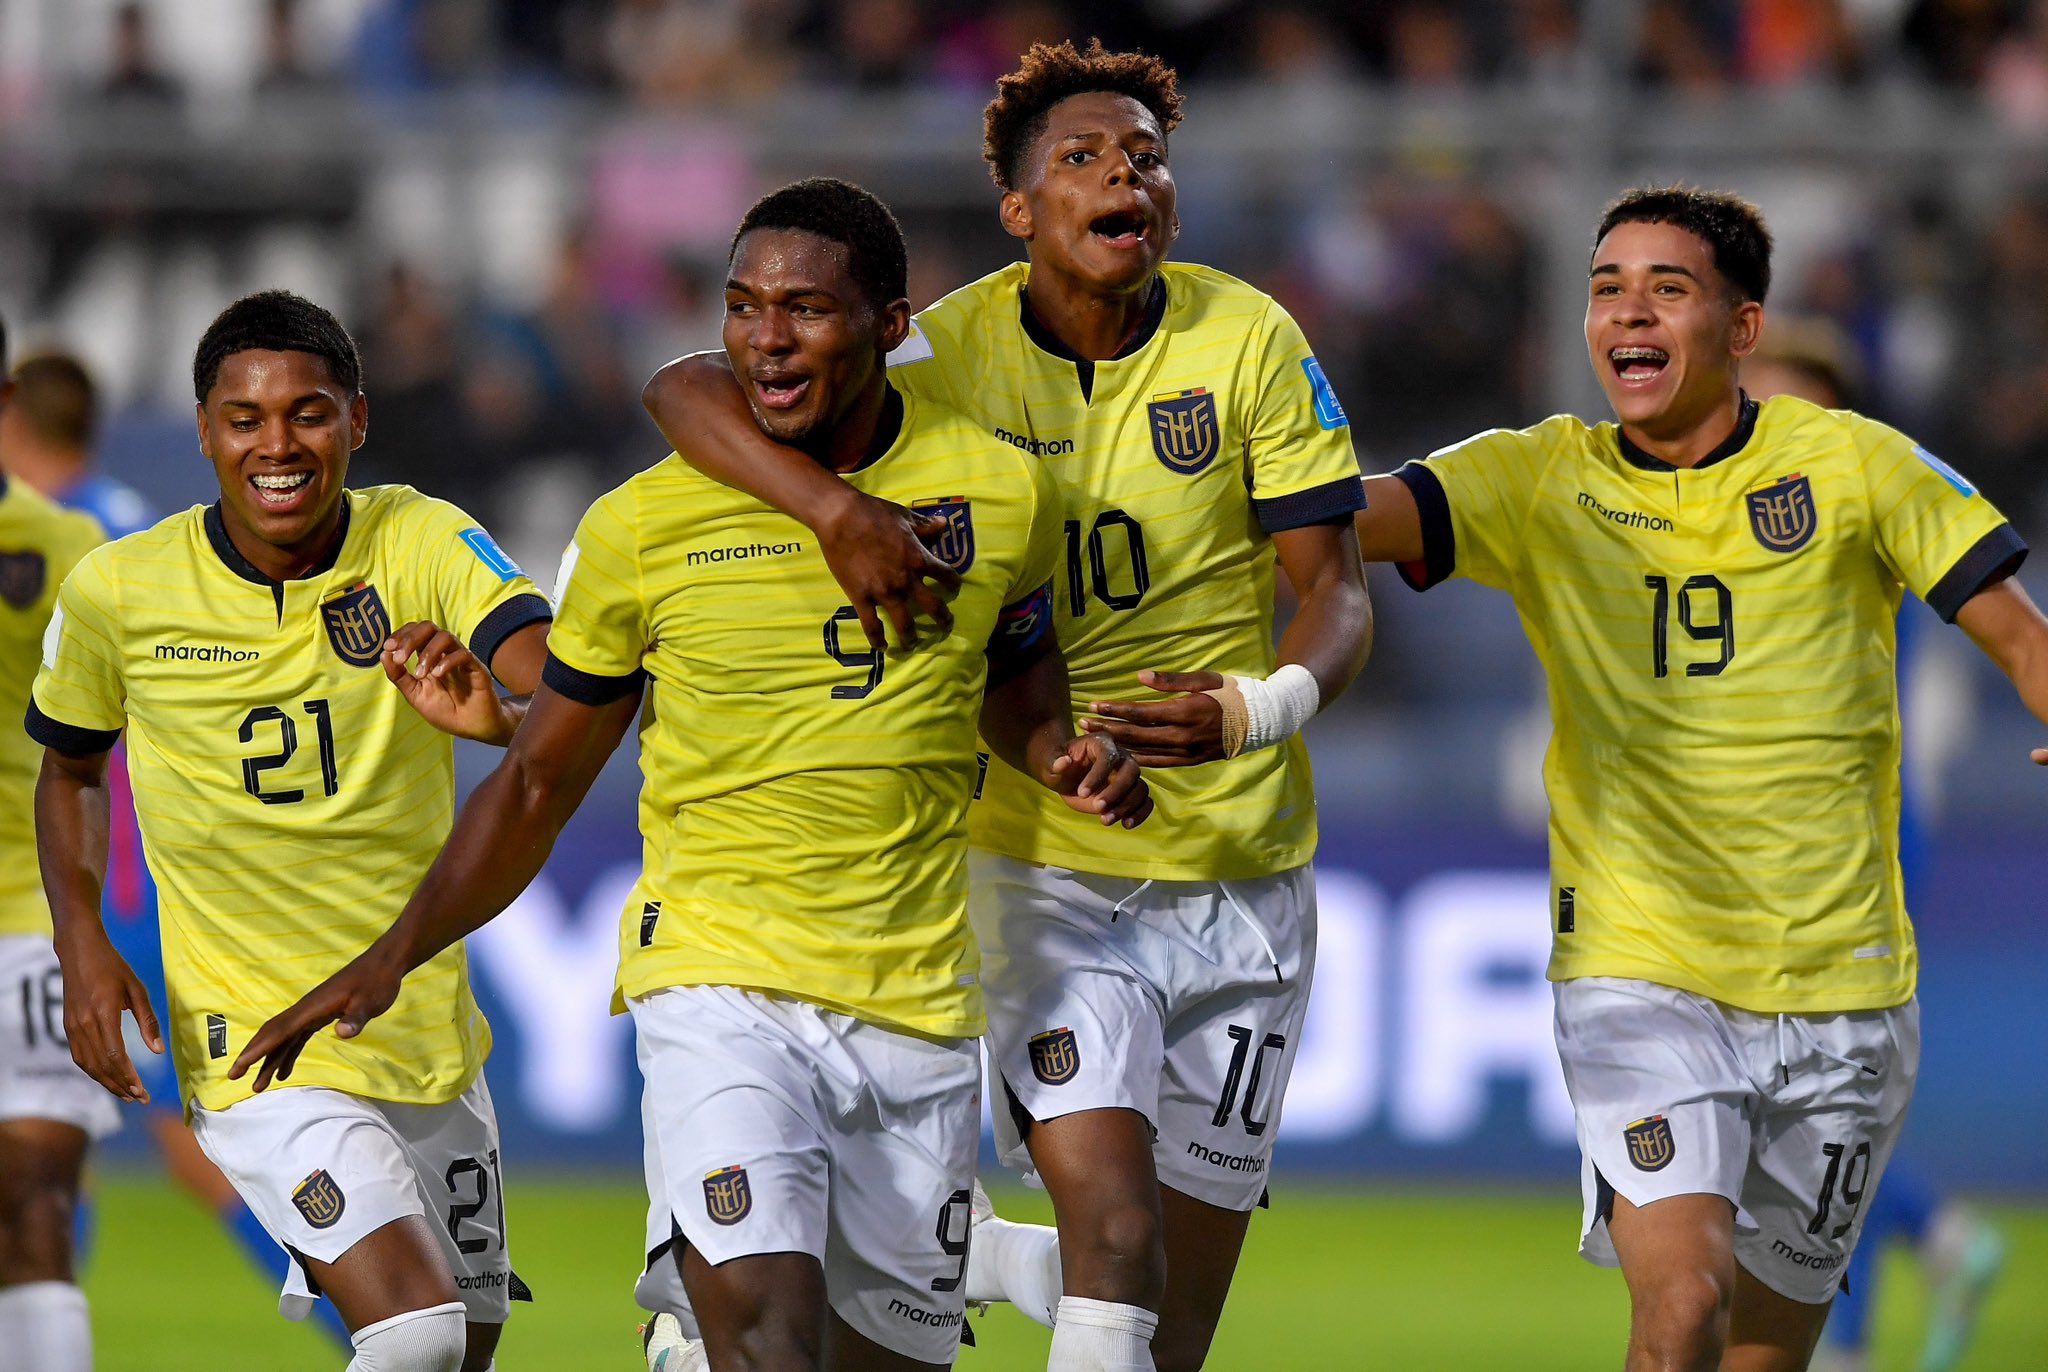 La selección ecuatoriana de fútbol Sub-20 remontó un 1-0 adverso y derrotó a Eslovaquia en el Mundial de fútbol que se disputa en Argentina.